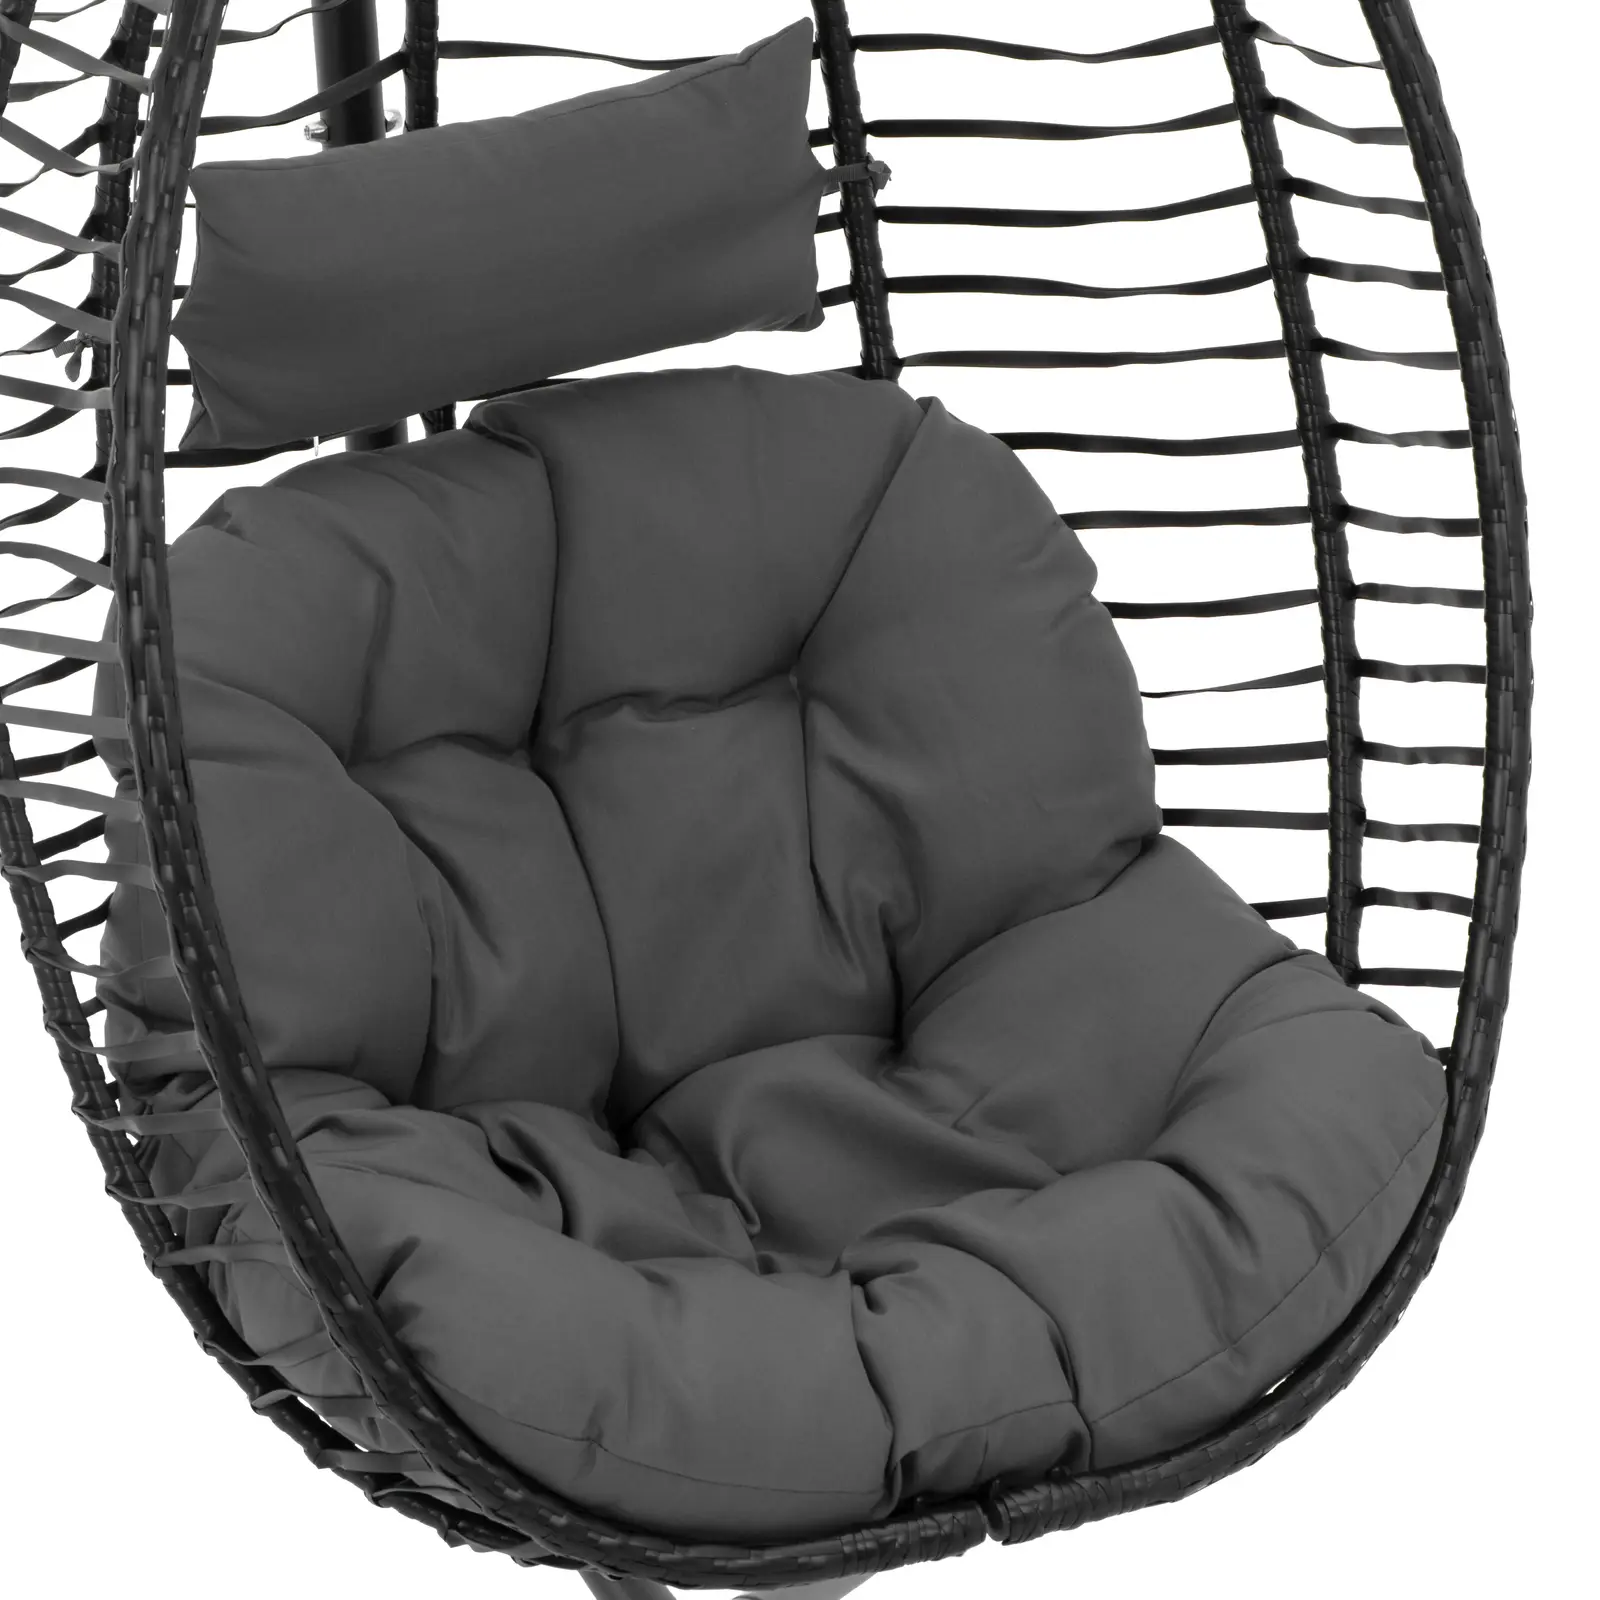 Buitenhangstoel met frame - zitting opklapbaar - zwart/grijs - ovaal